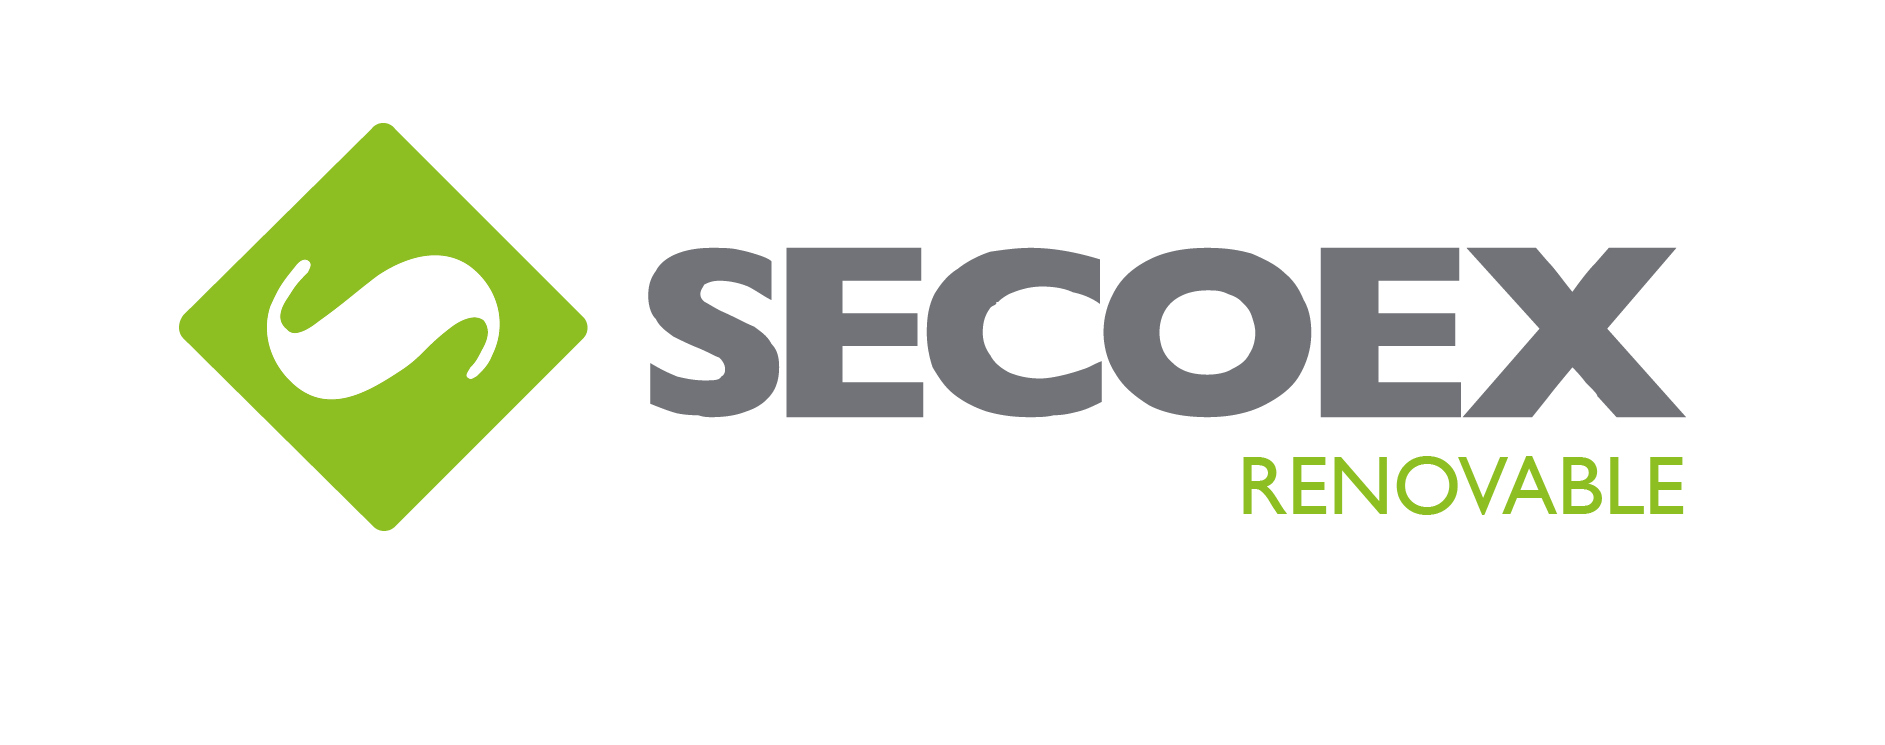 Secoex Renovables